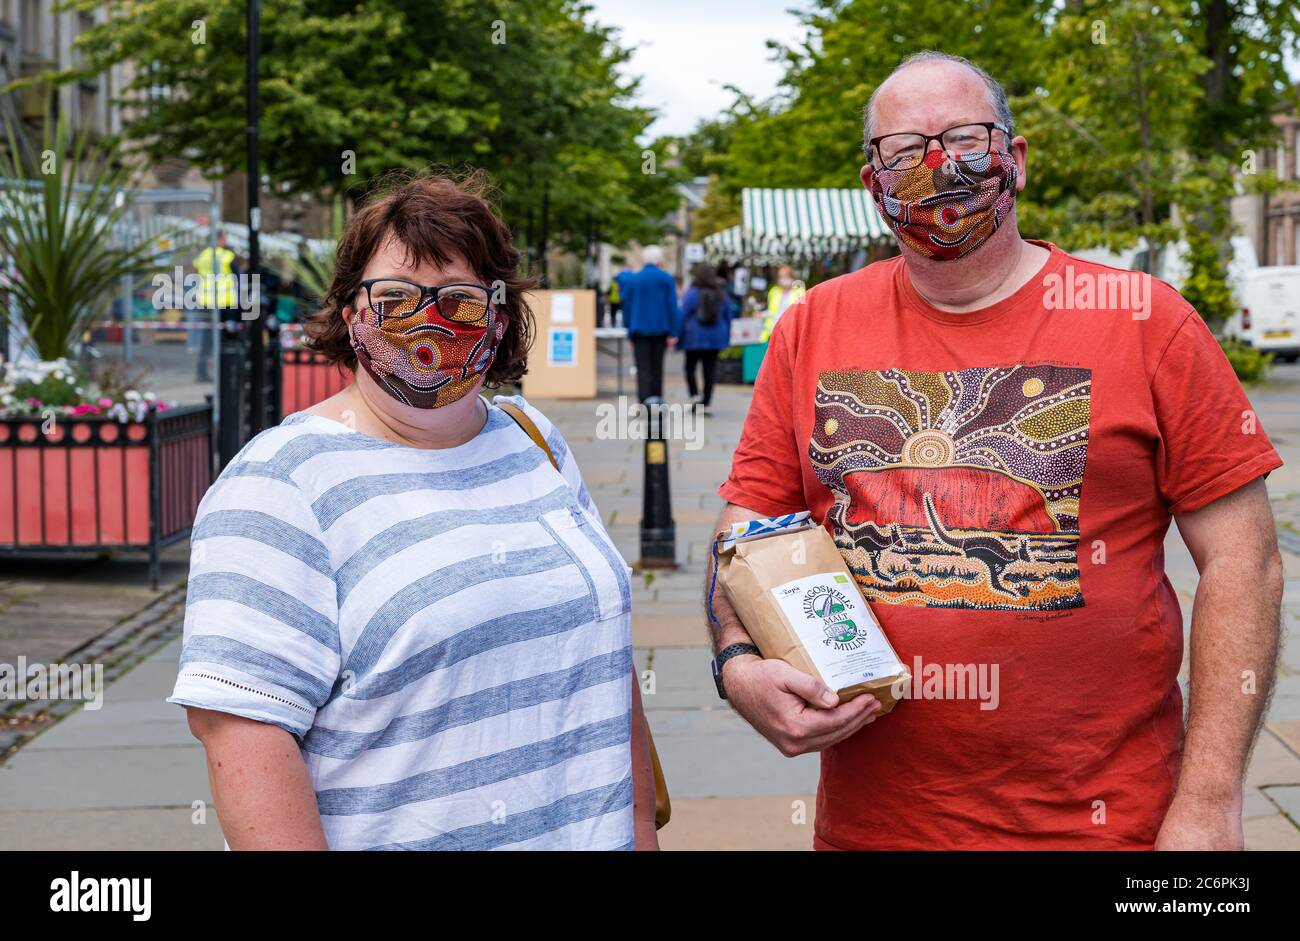 Un couple portant des masques de visage faits maison assortis au Farmers Market pendant la pandémie Covid-19, Haddington, East Lothian, Écosse, Royaume-Uni Banque D'Images